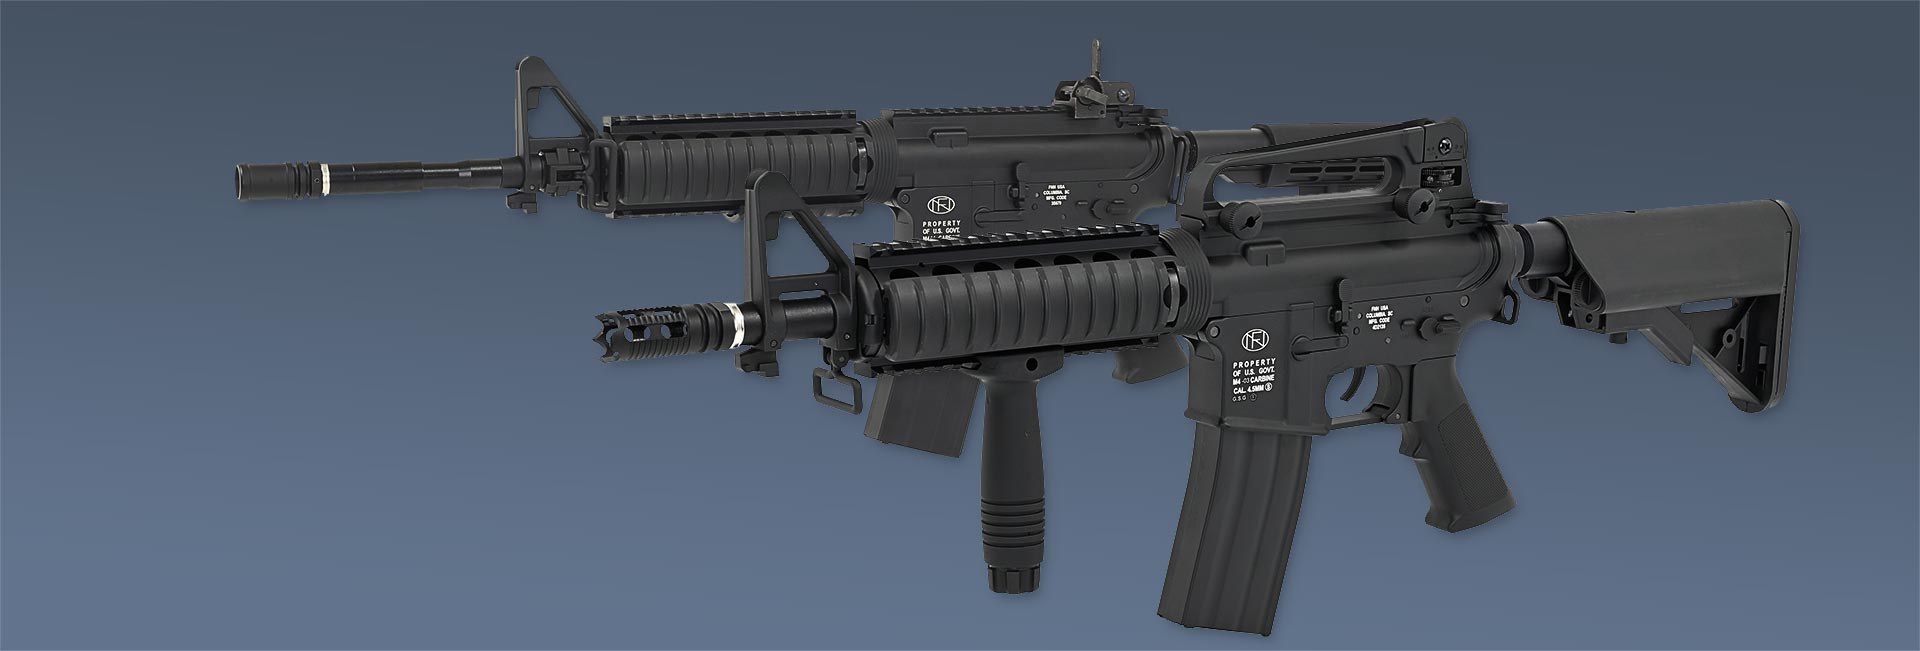 FN Herstal M4 Modelle